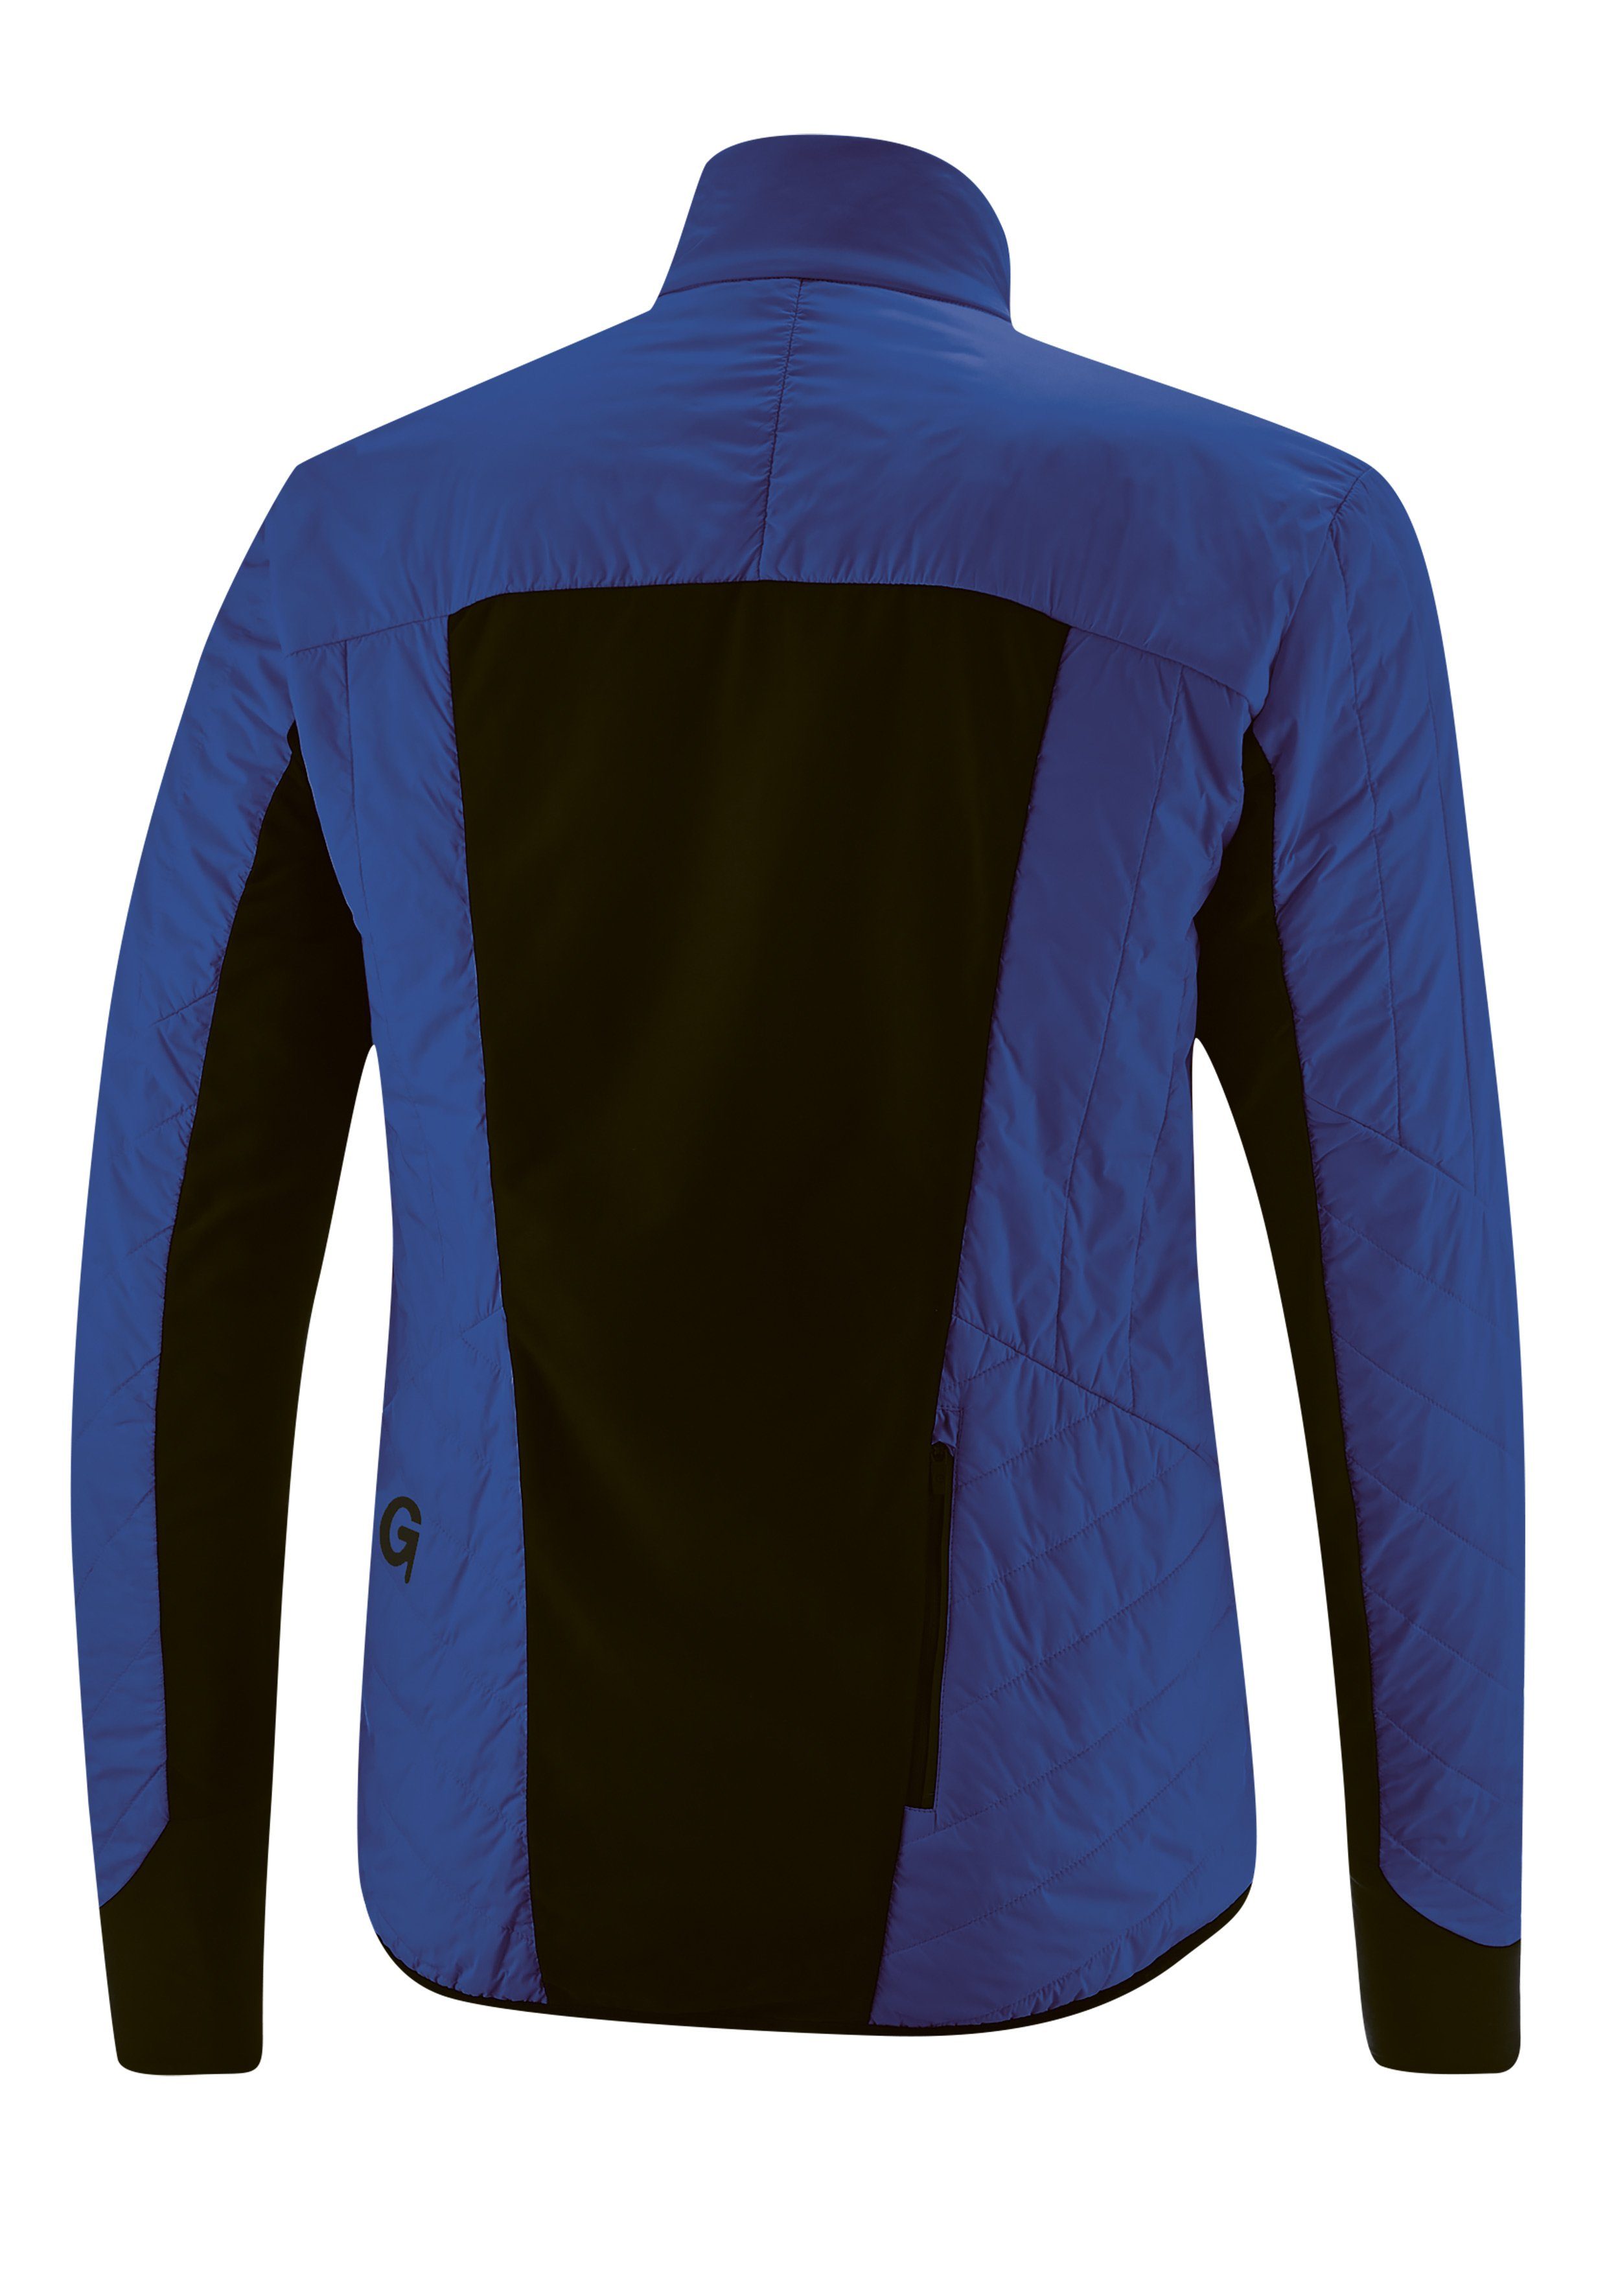 Fahrradjacke Gonso und kobaltblau Primaloft-Jacke, Tomar winddicht Herren warm, atmungsaktiv